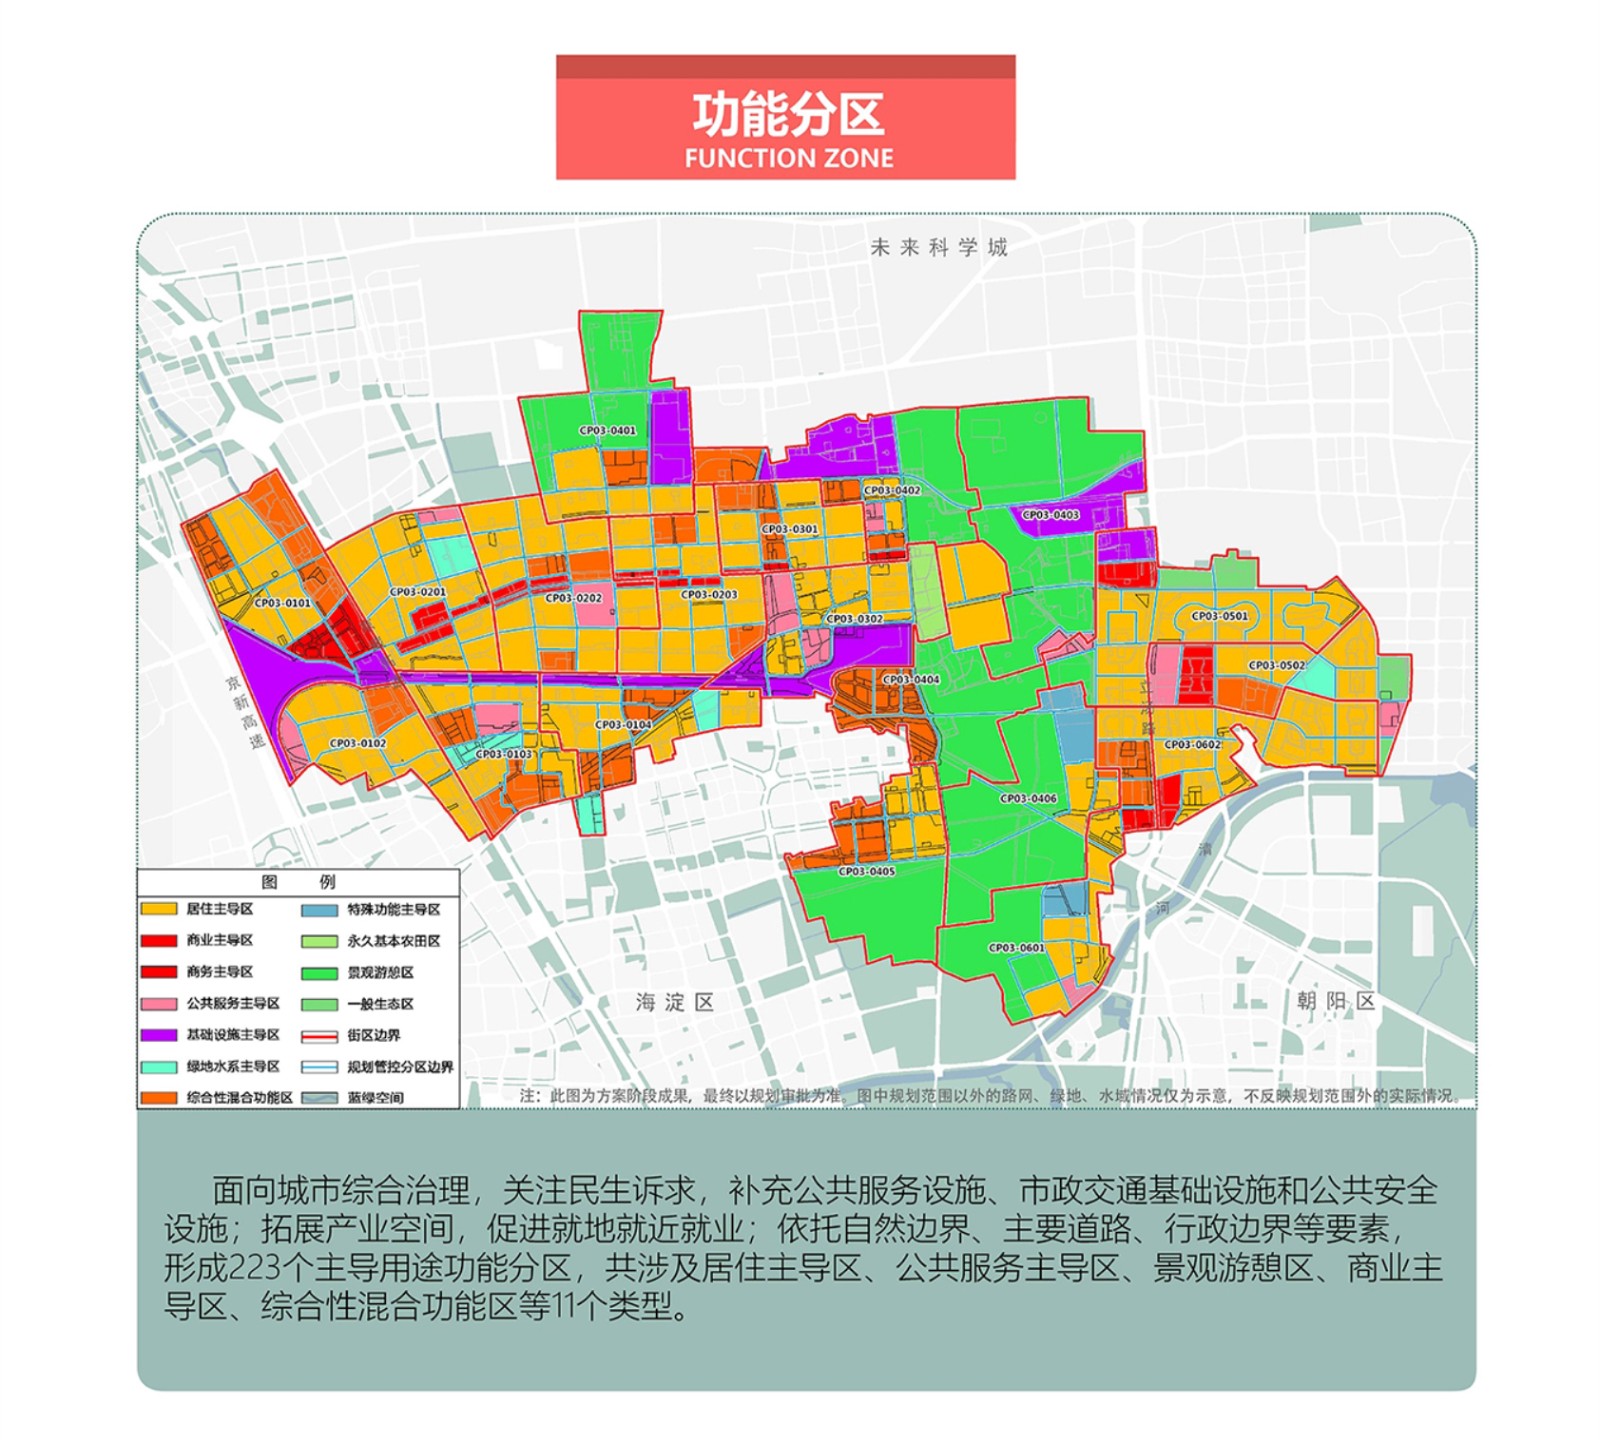 《回龙观、天通苑地区街区控制性详细规划》（草案）进入公示期-中国网地产